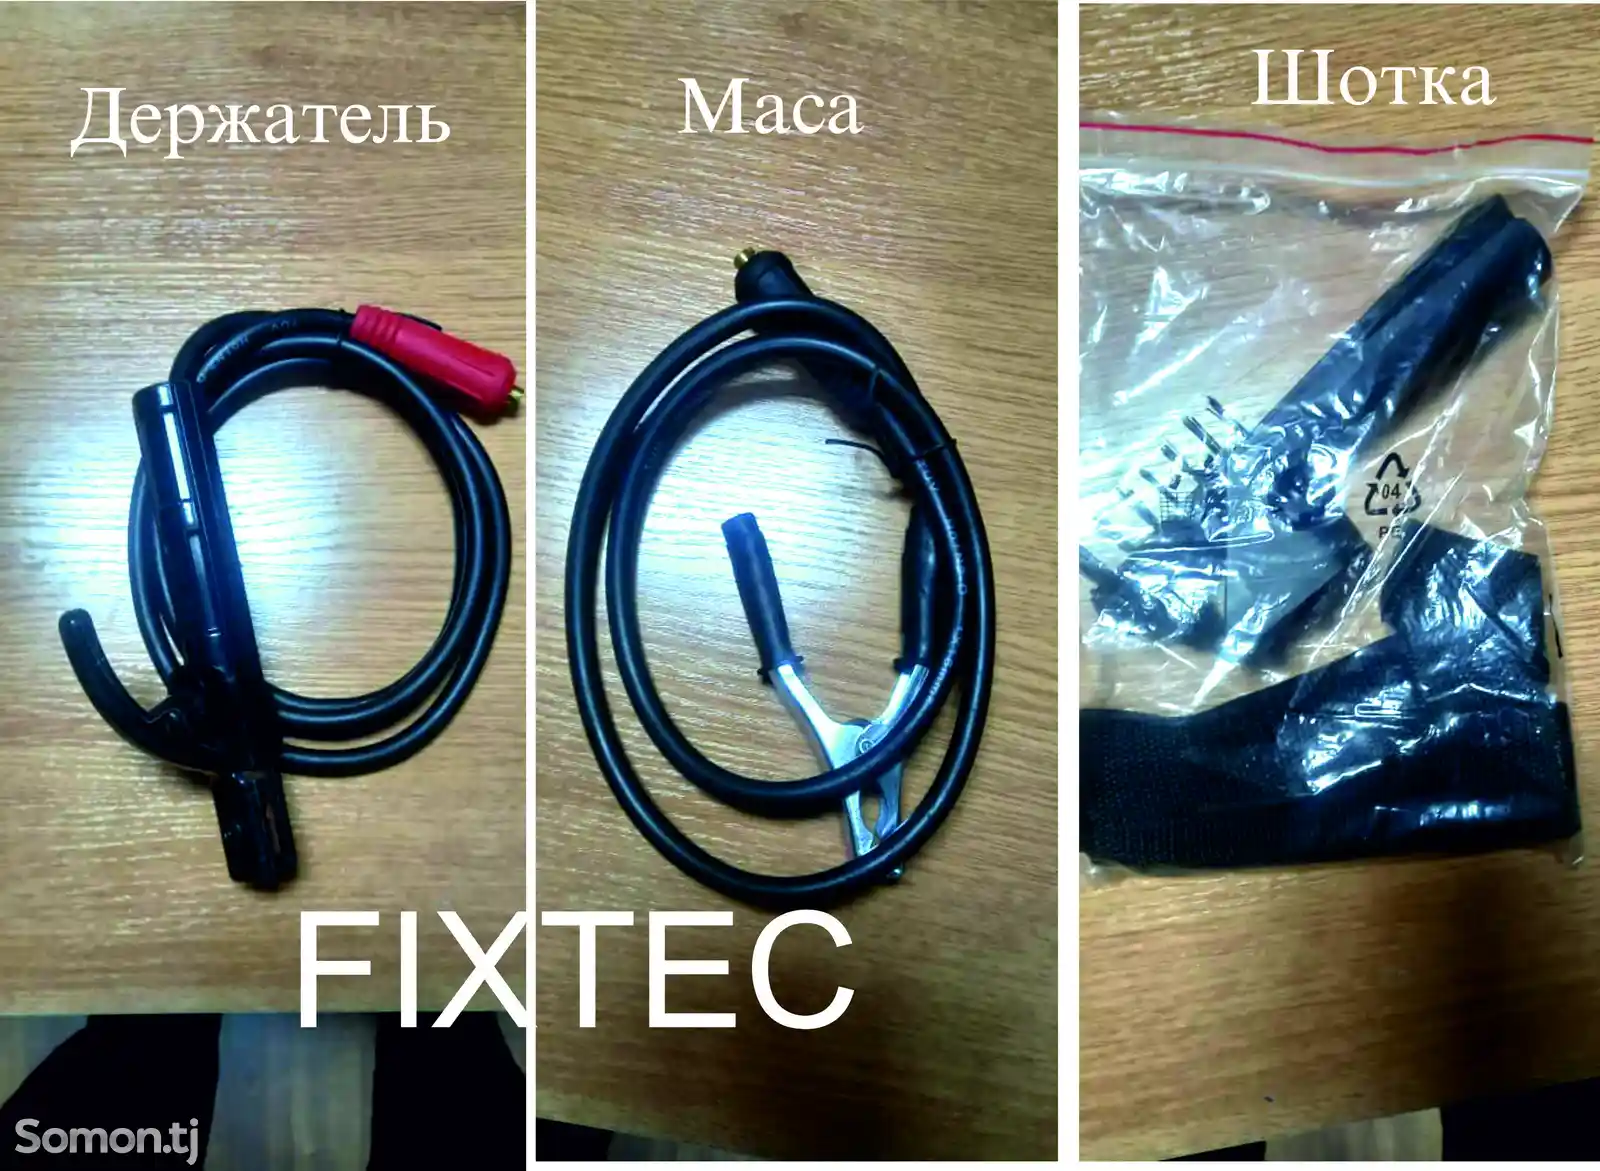 Сварочный апарат Fixtec-4